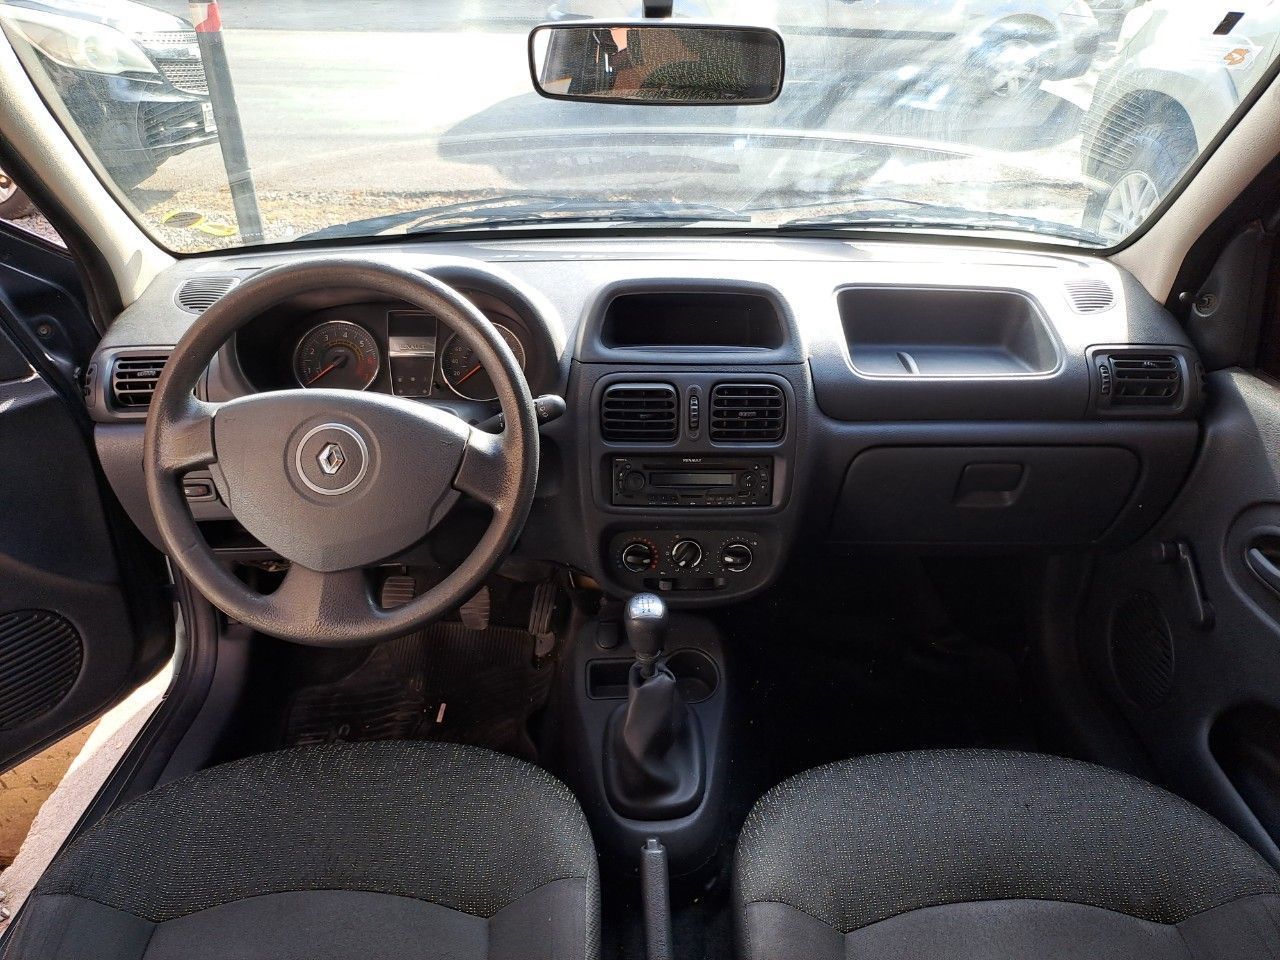 Renault Clio Usado Financiado en Mendoza, deRuedas